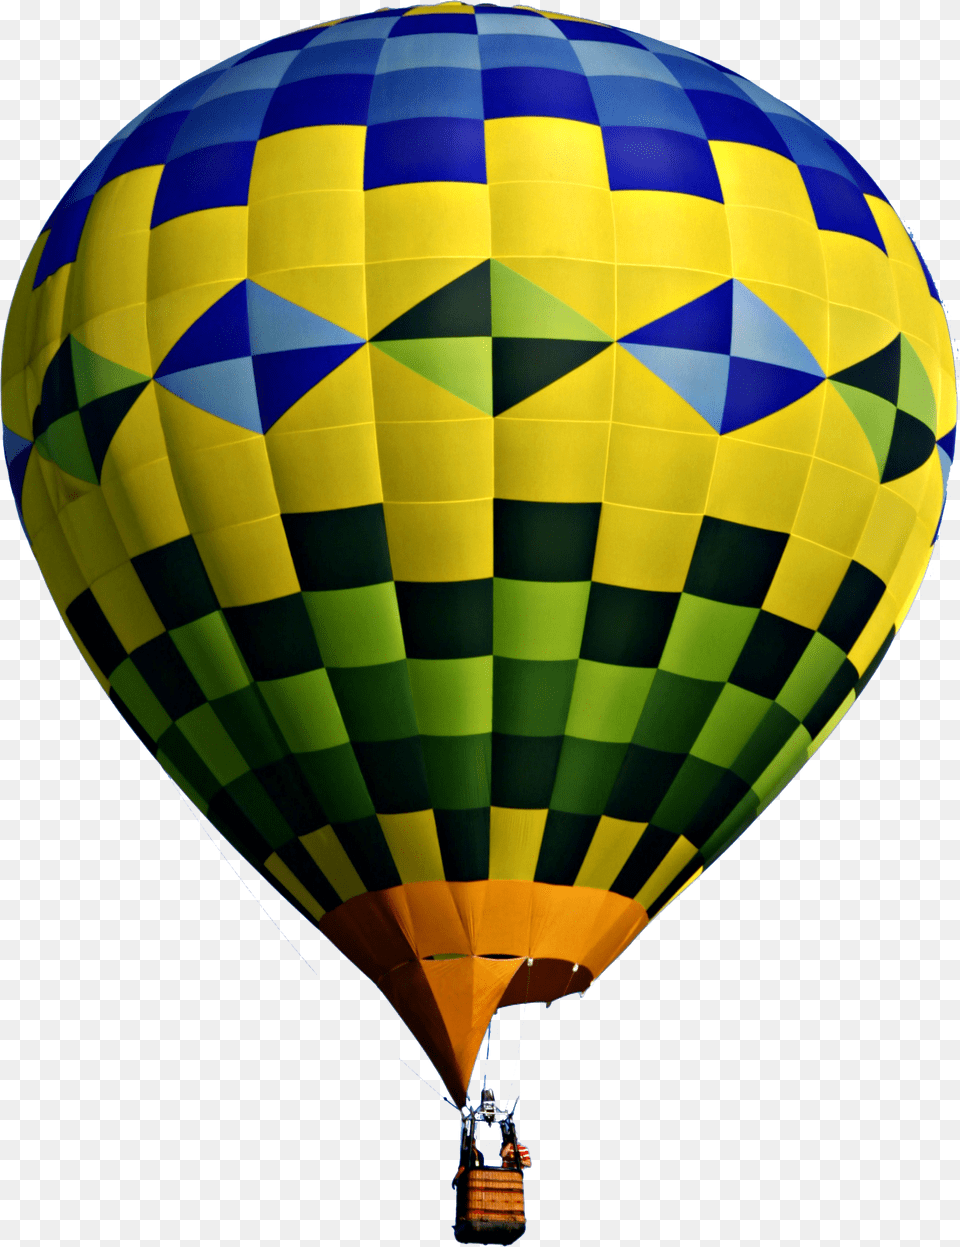 Air Balloon, Aircraft, Hot Air Balloon, Transportation, Vehicle Png